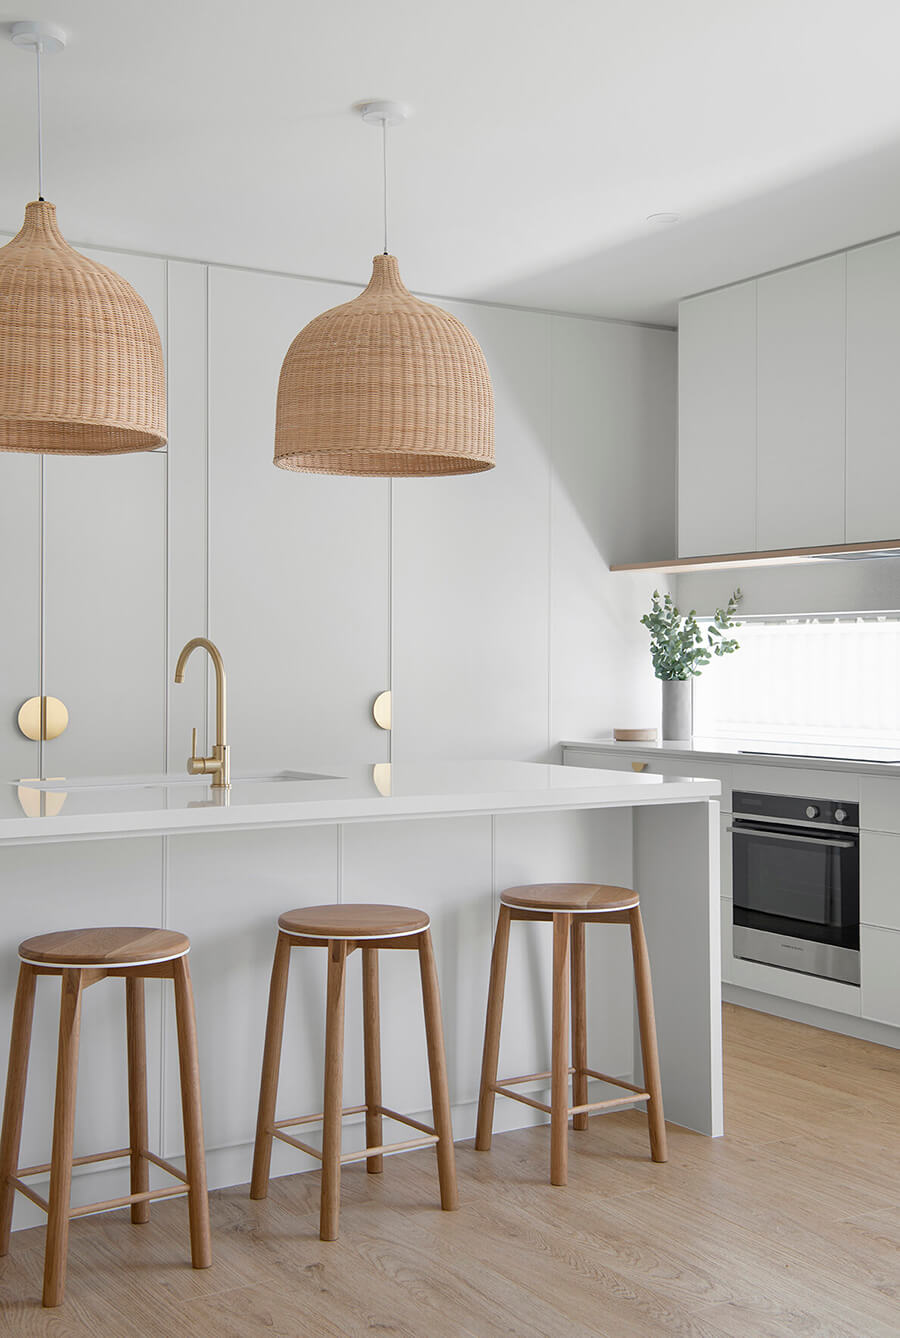 Esta imagen muestra una idea para cocina con muebles estéticamente sencillos, como una isla de cocina blanca y pisos de madera altos.